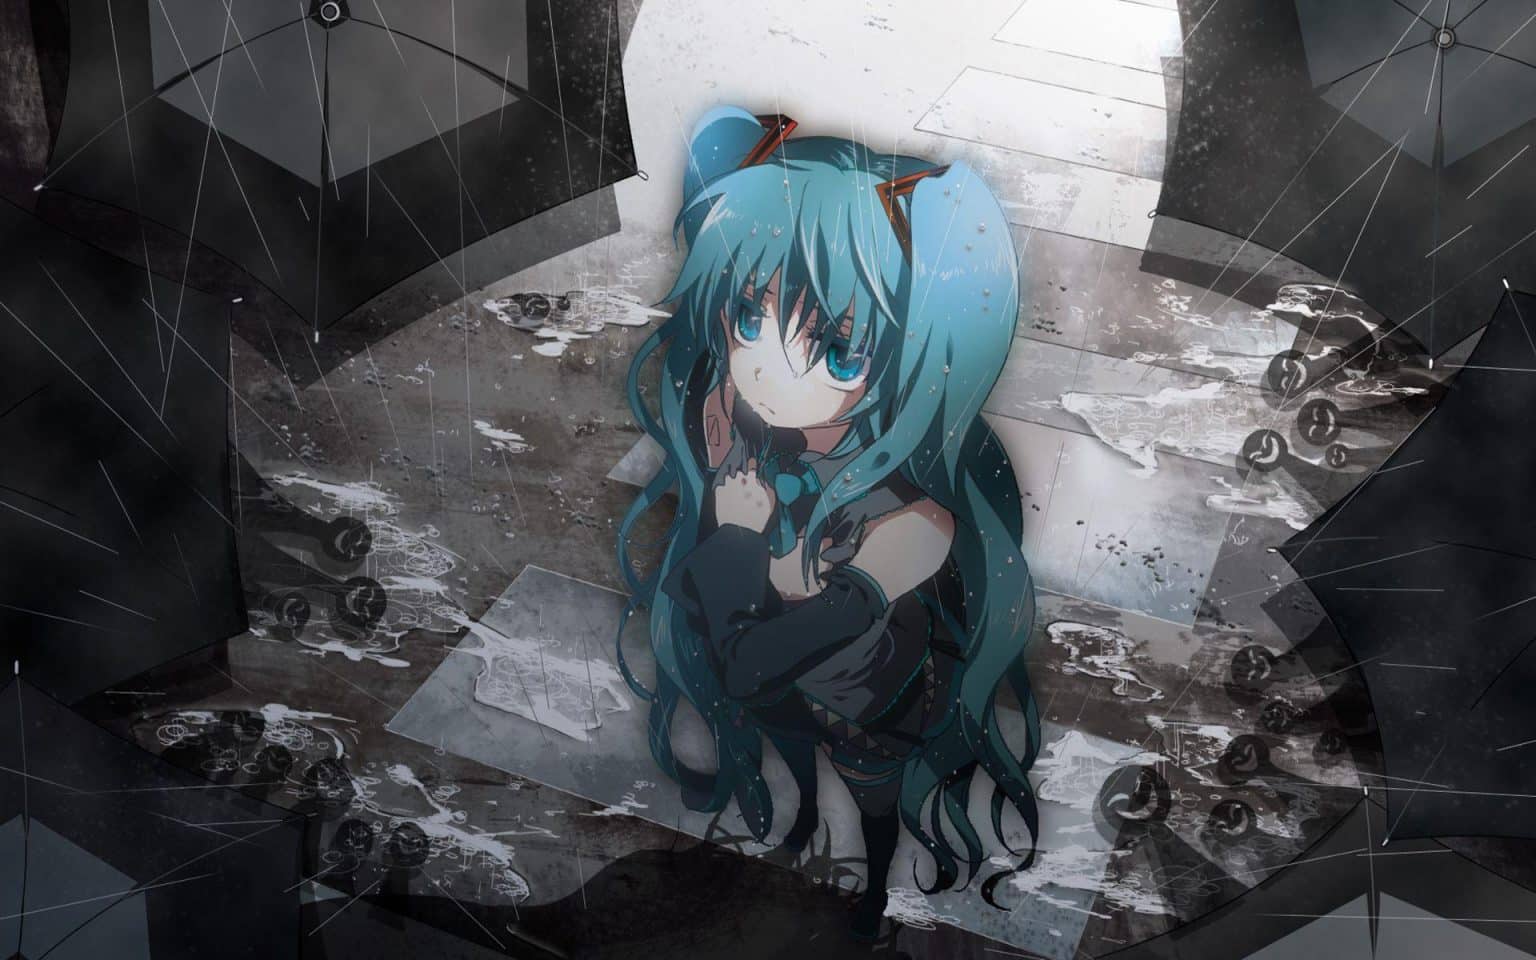 Anime Girl Buồn ngồi một mình dưới mưa